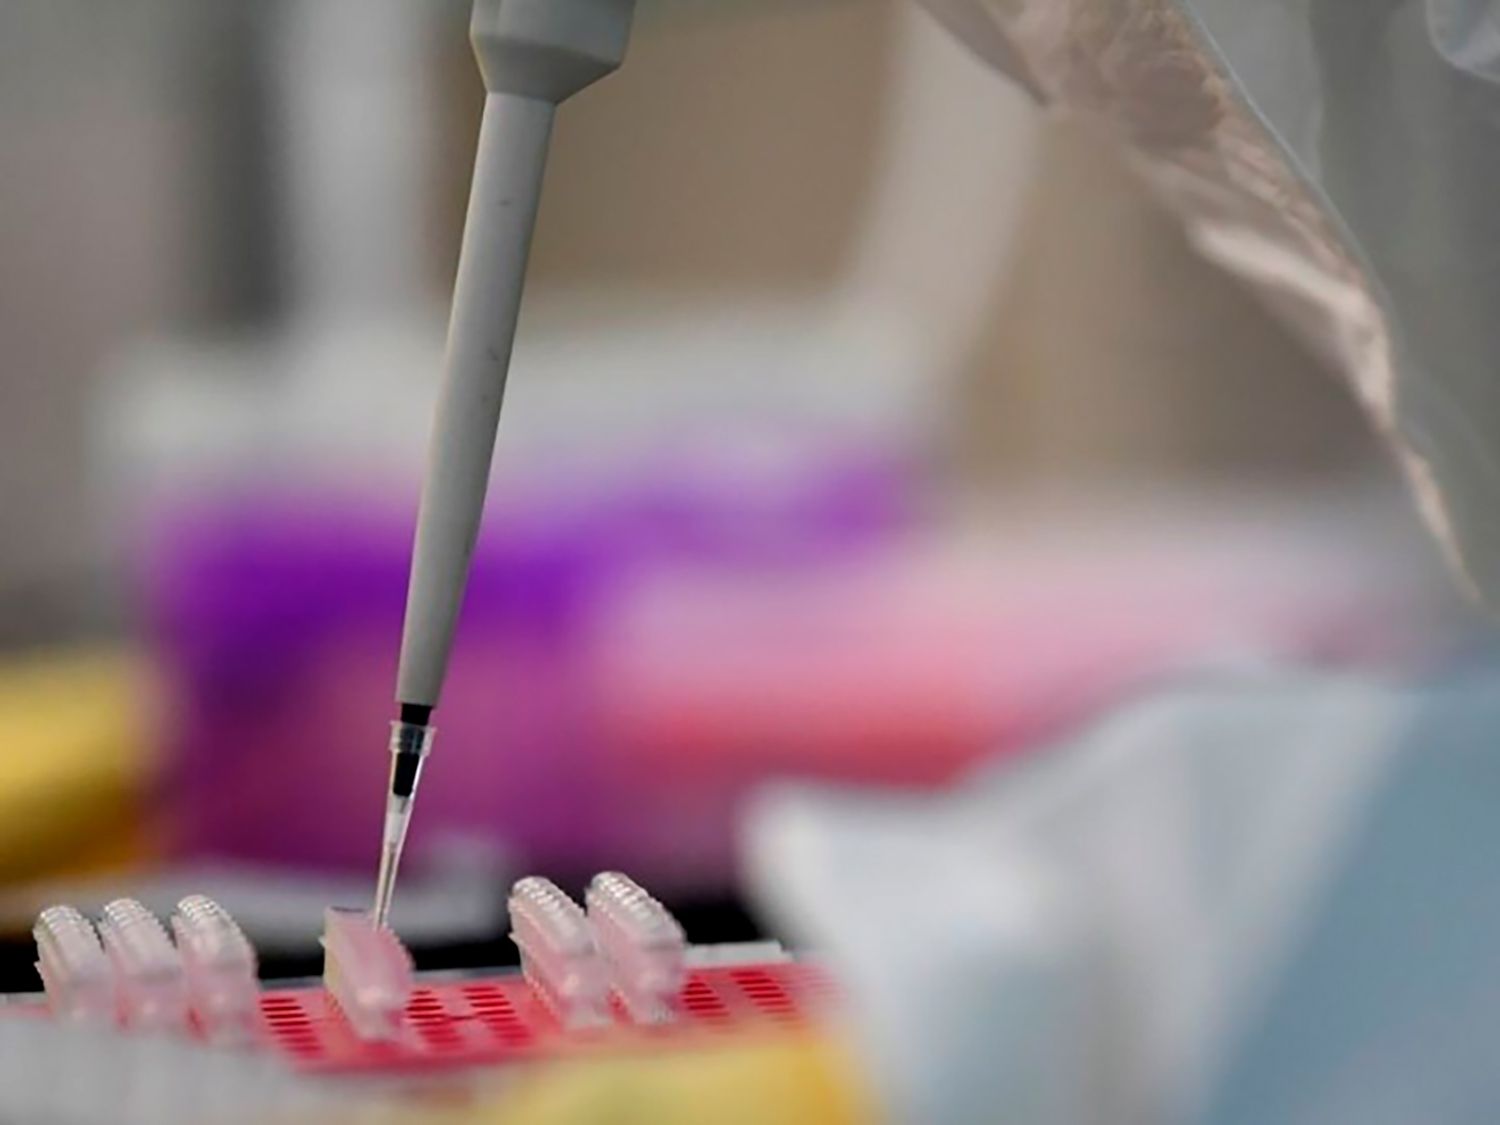 Tres hospitales españoles prueban ya un fármaco contra el coronavirus